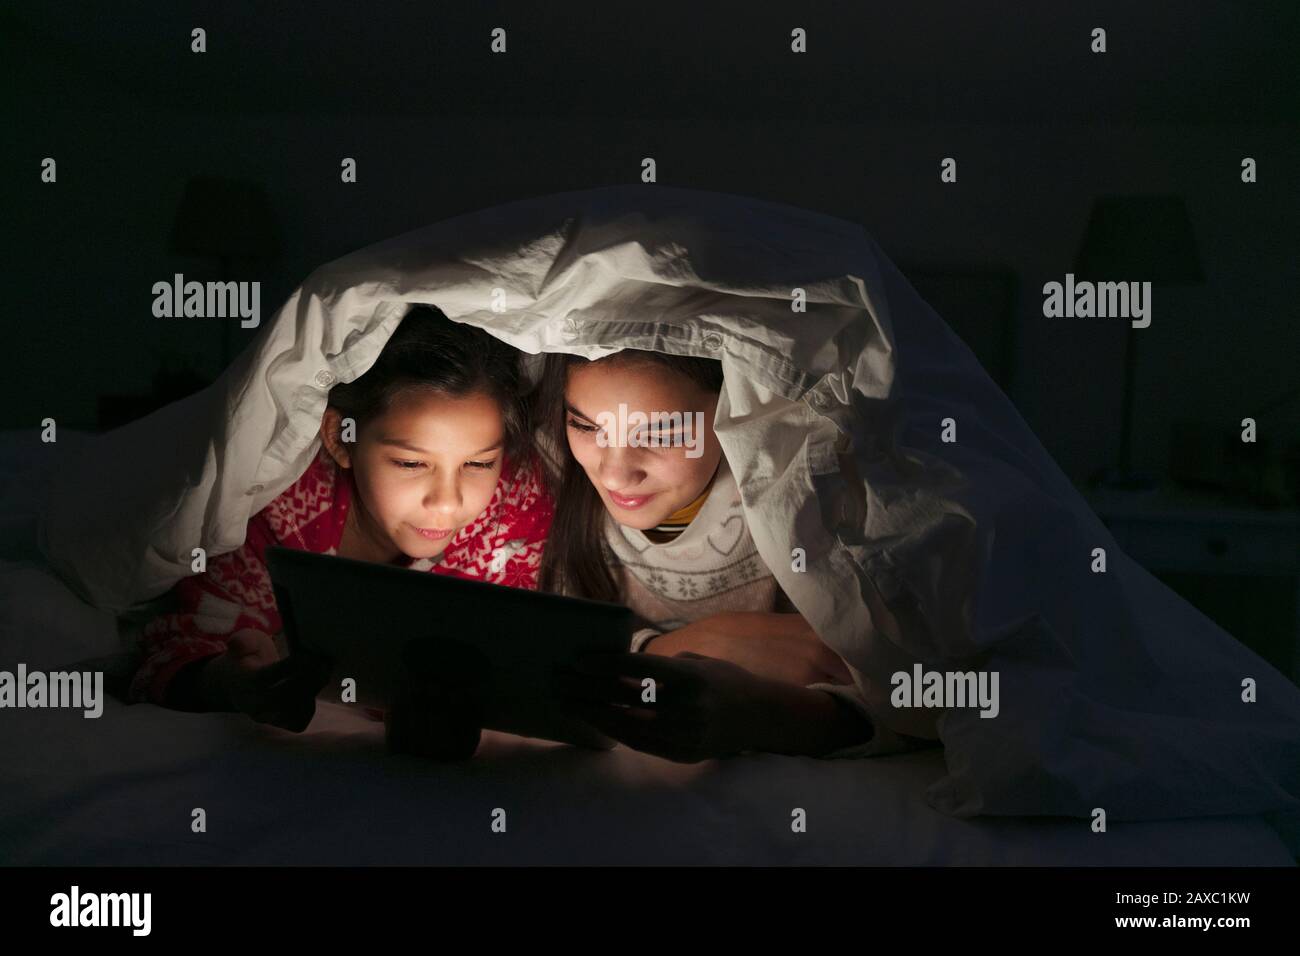 Sisters watching movie on digital tablet under blanket in dark bedroom Stock Photo